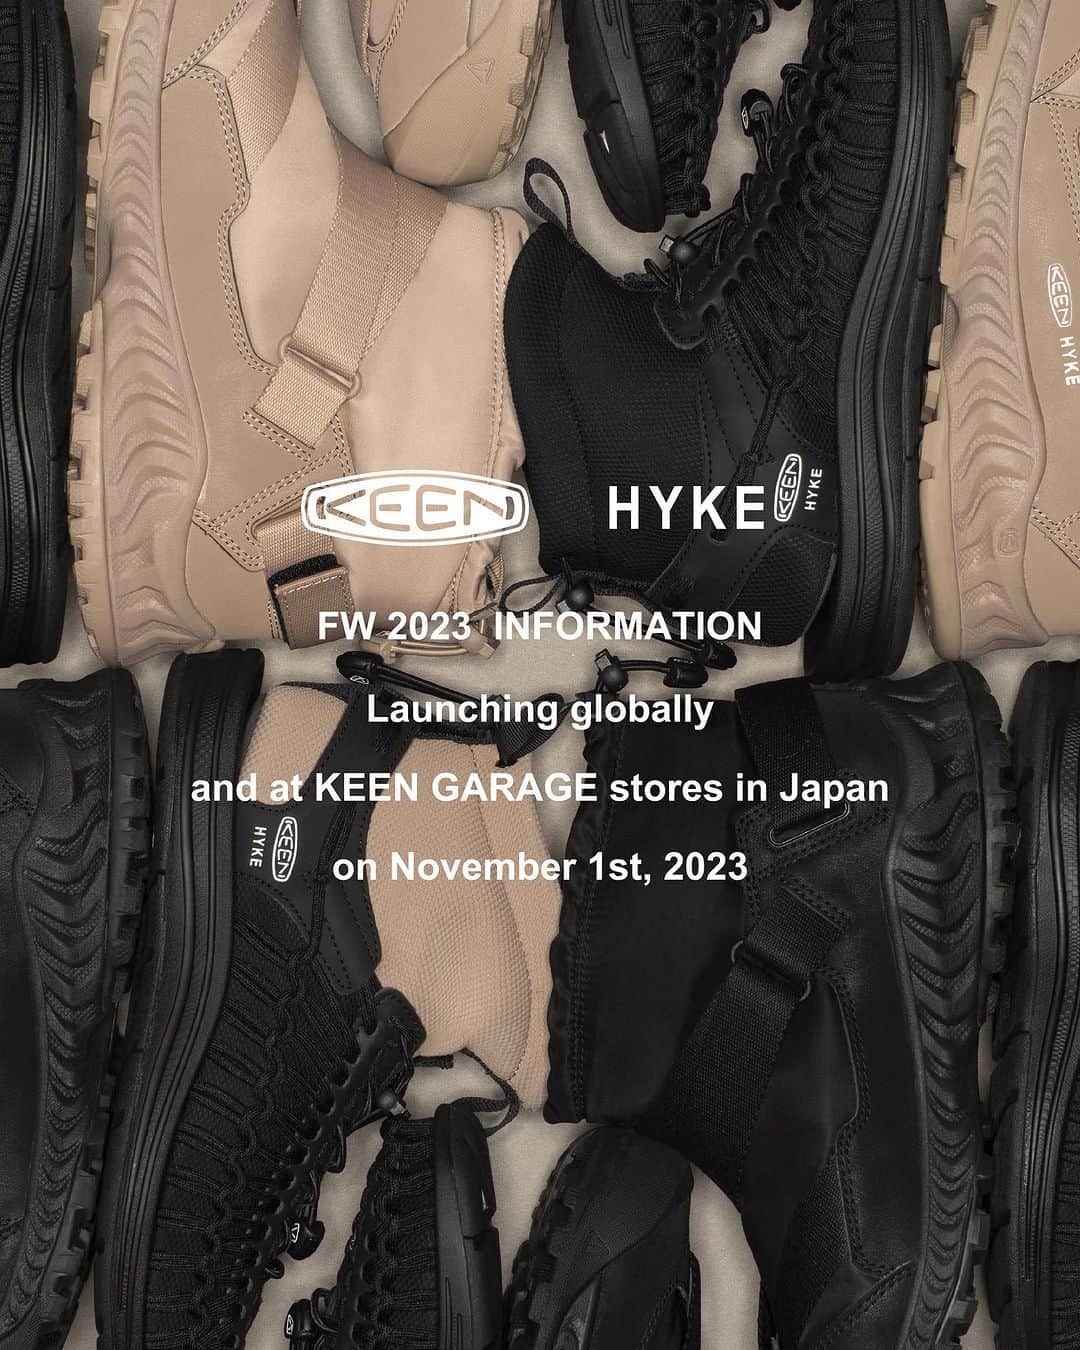 HYKEのインスタグラム：「"KEEN × HYKE" FW 2023 COLLECTION - Global Launch Date: November 1st, 2023 - ・KEEN US OFFICIAL ONLINE STORE https://www.keenfootwear.com/ ・KEEN EUROPE OFFICIAL ONLINE STORE https://keenfootwear.de/en/  ・KEEN CHINA TMALL OFFICIAL ONLINE STORE https://lnky.jp/6Bs8VlH  ・KEEN CHINA JD OFFICIAL ONLINE STORE https://lnky.jp/EGlsU9p  ・KEEN CHINA OFFICIAL DEWU STORE  https://lnky.jp/p29Ga7k - - "KEEN× HYKE" FW 2023 COLLECTIONグローバル発売のご案内 - 下記日程にて"KEEN × HYKE" FW 2023 COLLECTIONがグローバルで発売解禁と なります。 発売解禁日 : 2023年11月1日 水曜日 - - "KEEN× HYKE" FW 2023 COLLECTION 日本国内11月1日販売開始店舗のご案内 - 11月1日より国内の下記店舗にて販売を開始いたします。 - ・KEEN GARAGE TOYOSU 135-8614  東京都江東区豊洲2-4-9 アーバンドック ららぽーと豊洲 2階 ・KEEN GARAGE YOKOHAMA 220-0012  横浜市西区みなとみらい3-5-1 MARK IS みなとみらい 1階 ・KEEN GARAGE SHONAN 251-0041  神奈川県藤沢市辻堂神台1-3-1 テラスモール湘南 1階 ・KEEN GARAGE SAITAMA 330-0843  埼玉県さいたま市大宮区吉敷町4-263-1  COCOON  2階 ・KEEN GARAGE NAGOYA 460-0008  愛知県名古屋市中区栄3-6-1 ラシック 5階 ・KEEN OSAKA 530-8558  大阪府大阪市北区梅田3-1-3 ルクアイーレ 6階 ・KEEN GARAGE EXPOCITY 565-0826  大阪府吹田市千里万博公園2-1 ららぽーとEXPOCITY 2階 - ・KEEN GARAGE HARAJUKU（10月25日より販売中） 150-0001  東京都渋谷区神宮前6-12-17 ダイヤモンドビル 1階 - 発売日、販売方法に関しては取扱店舗により異なりますので、販売店舗に直接 お問い合わせください。 - @keen @keeneurope @keen_japan @keen_harajuku, #keenhyke #keen #hyke」